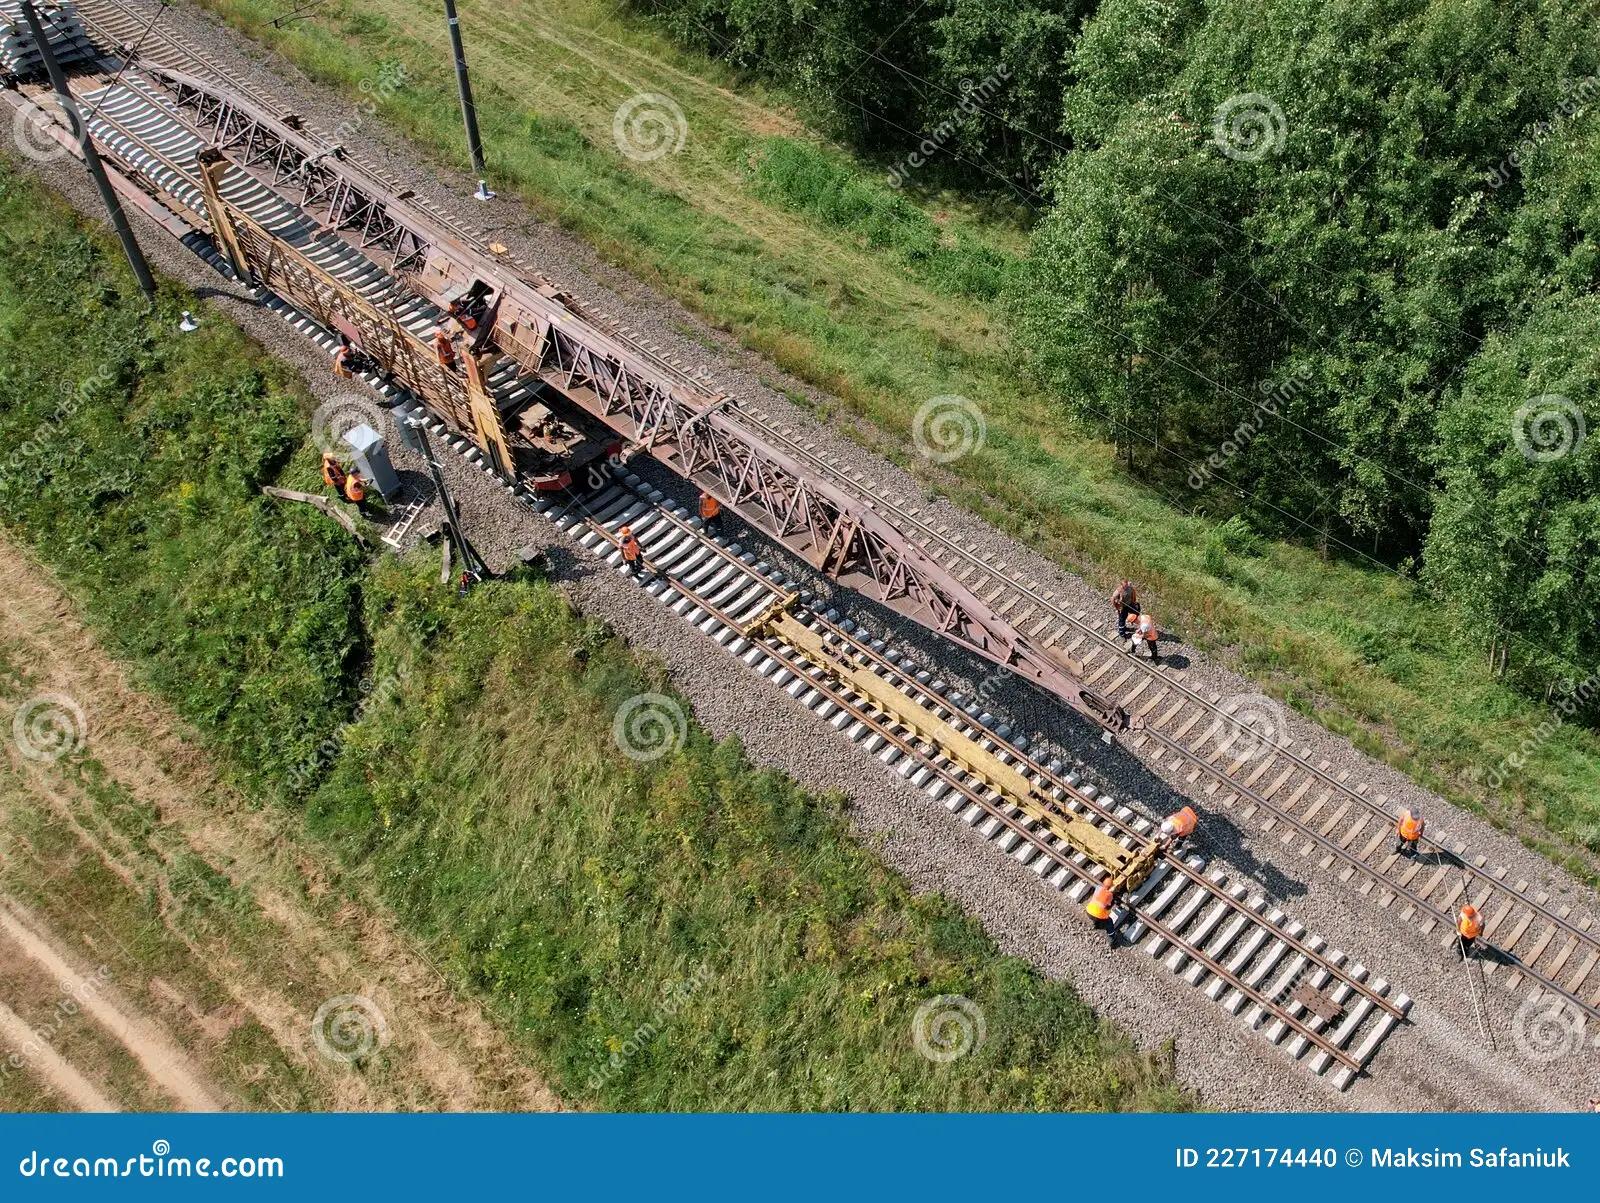 anclaje de vías de ferrocarril - Cómo se realiza la alineación de vía férrea